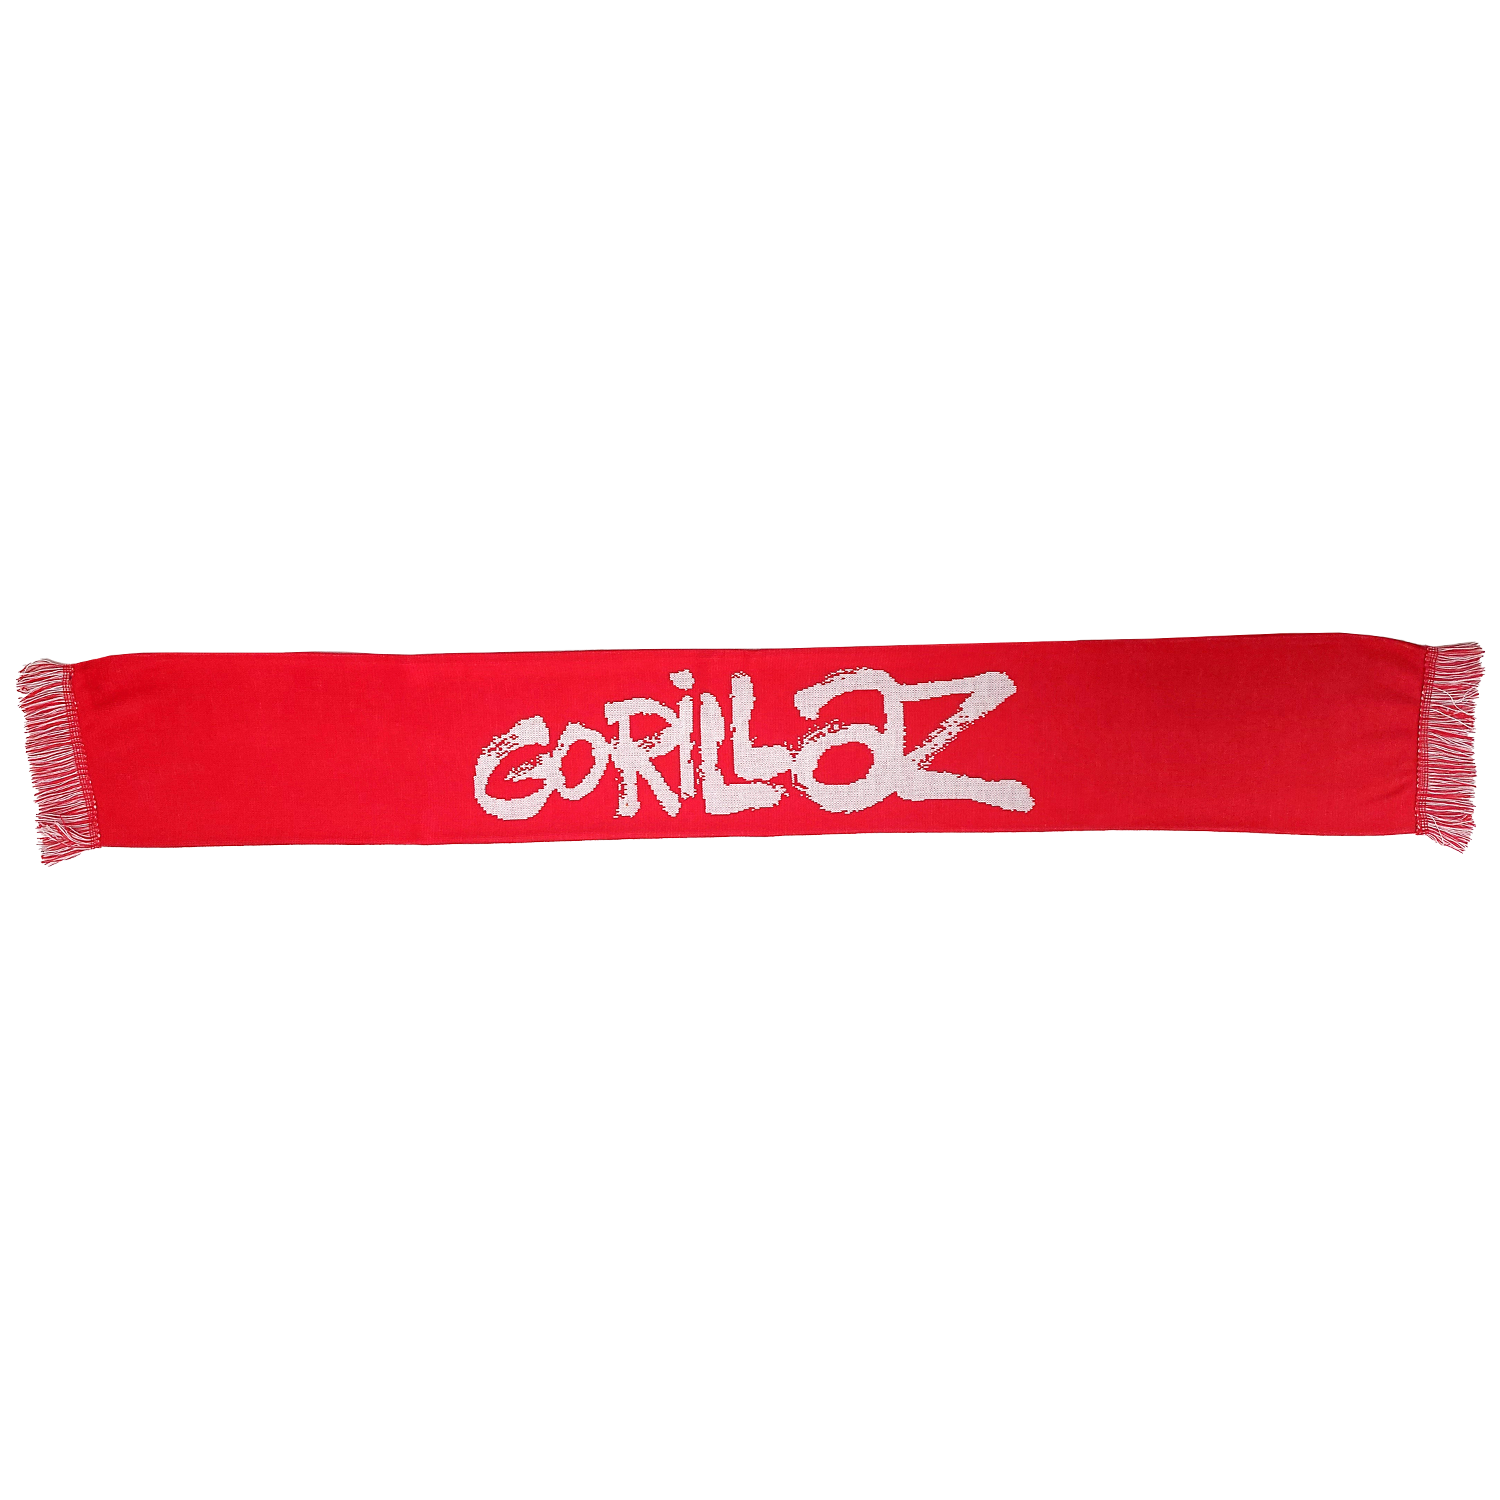 Gorillaz ロゴ・マフラー